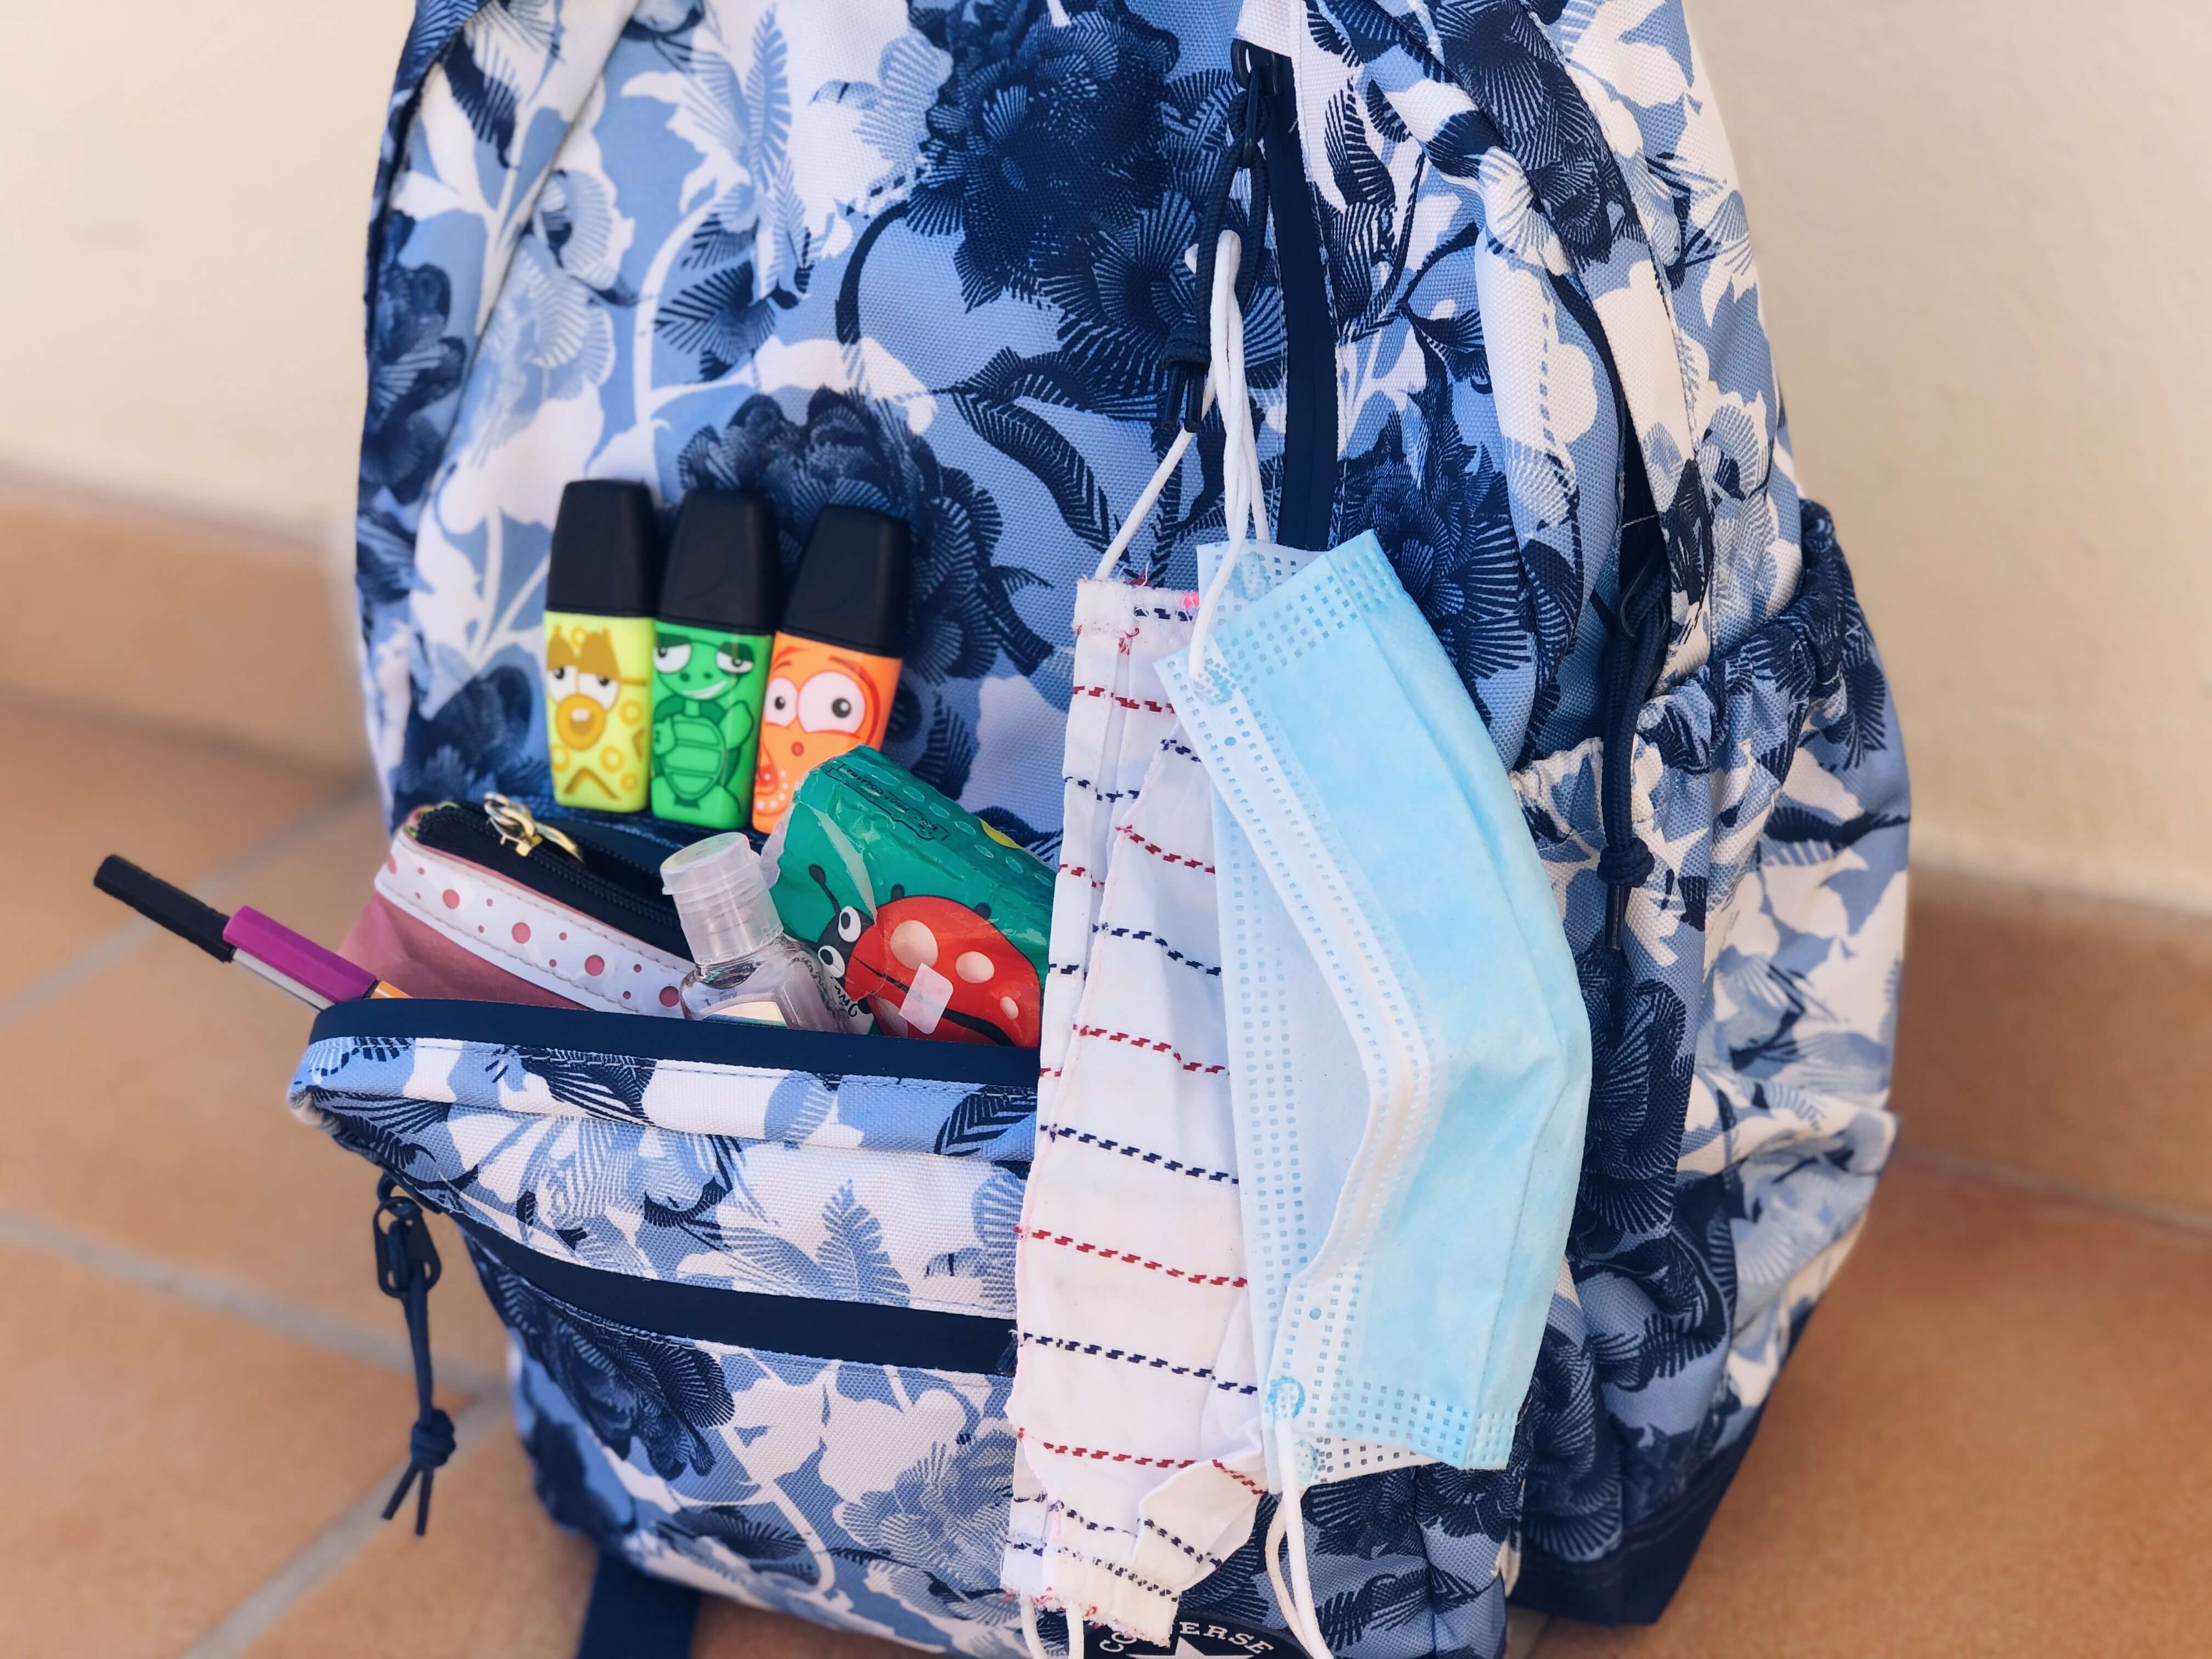 Rúška, antibakteriálny gél a písacie potreby pripravené na školskom batohu.